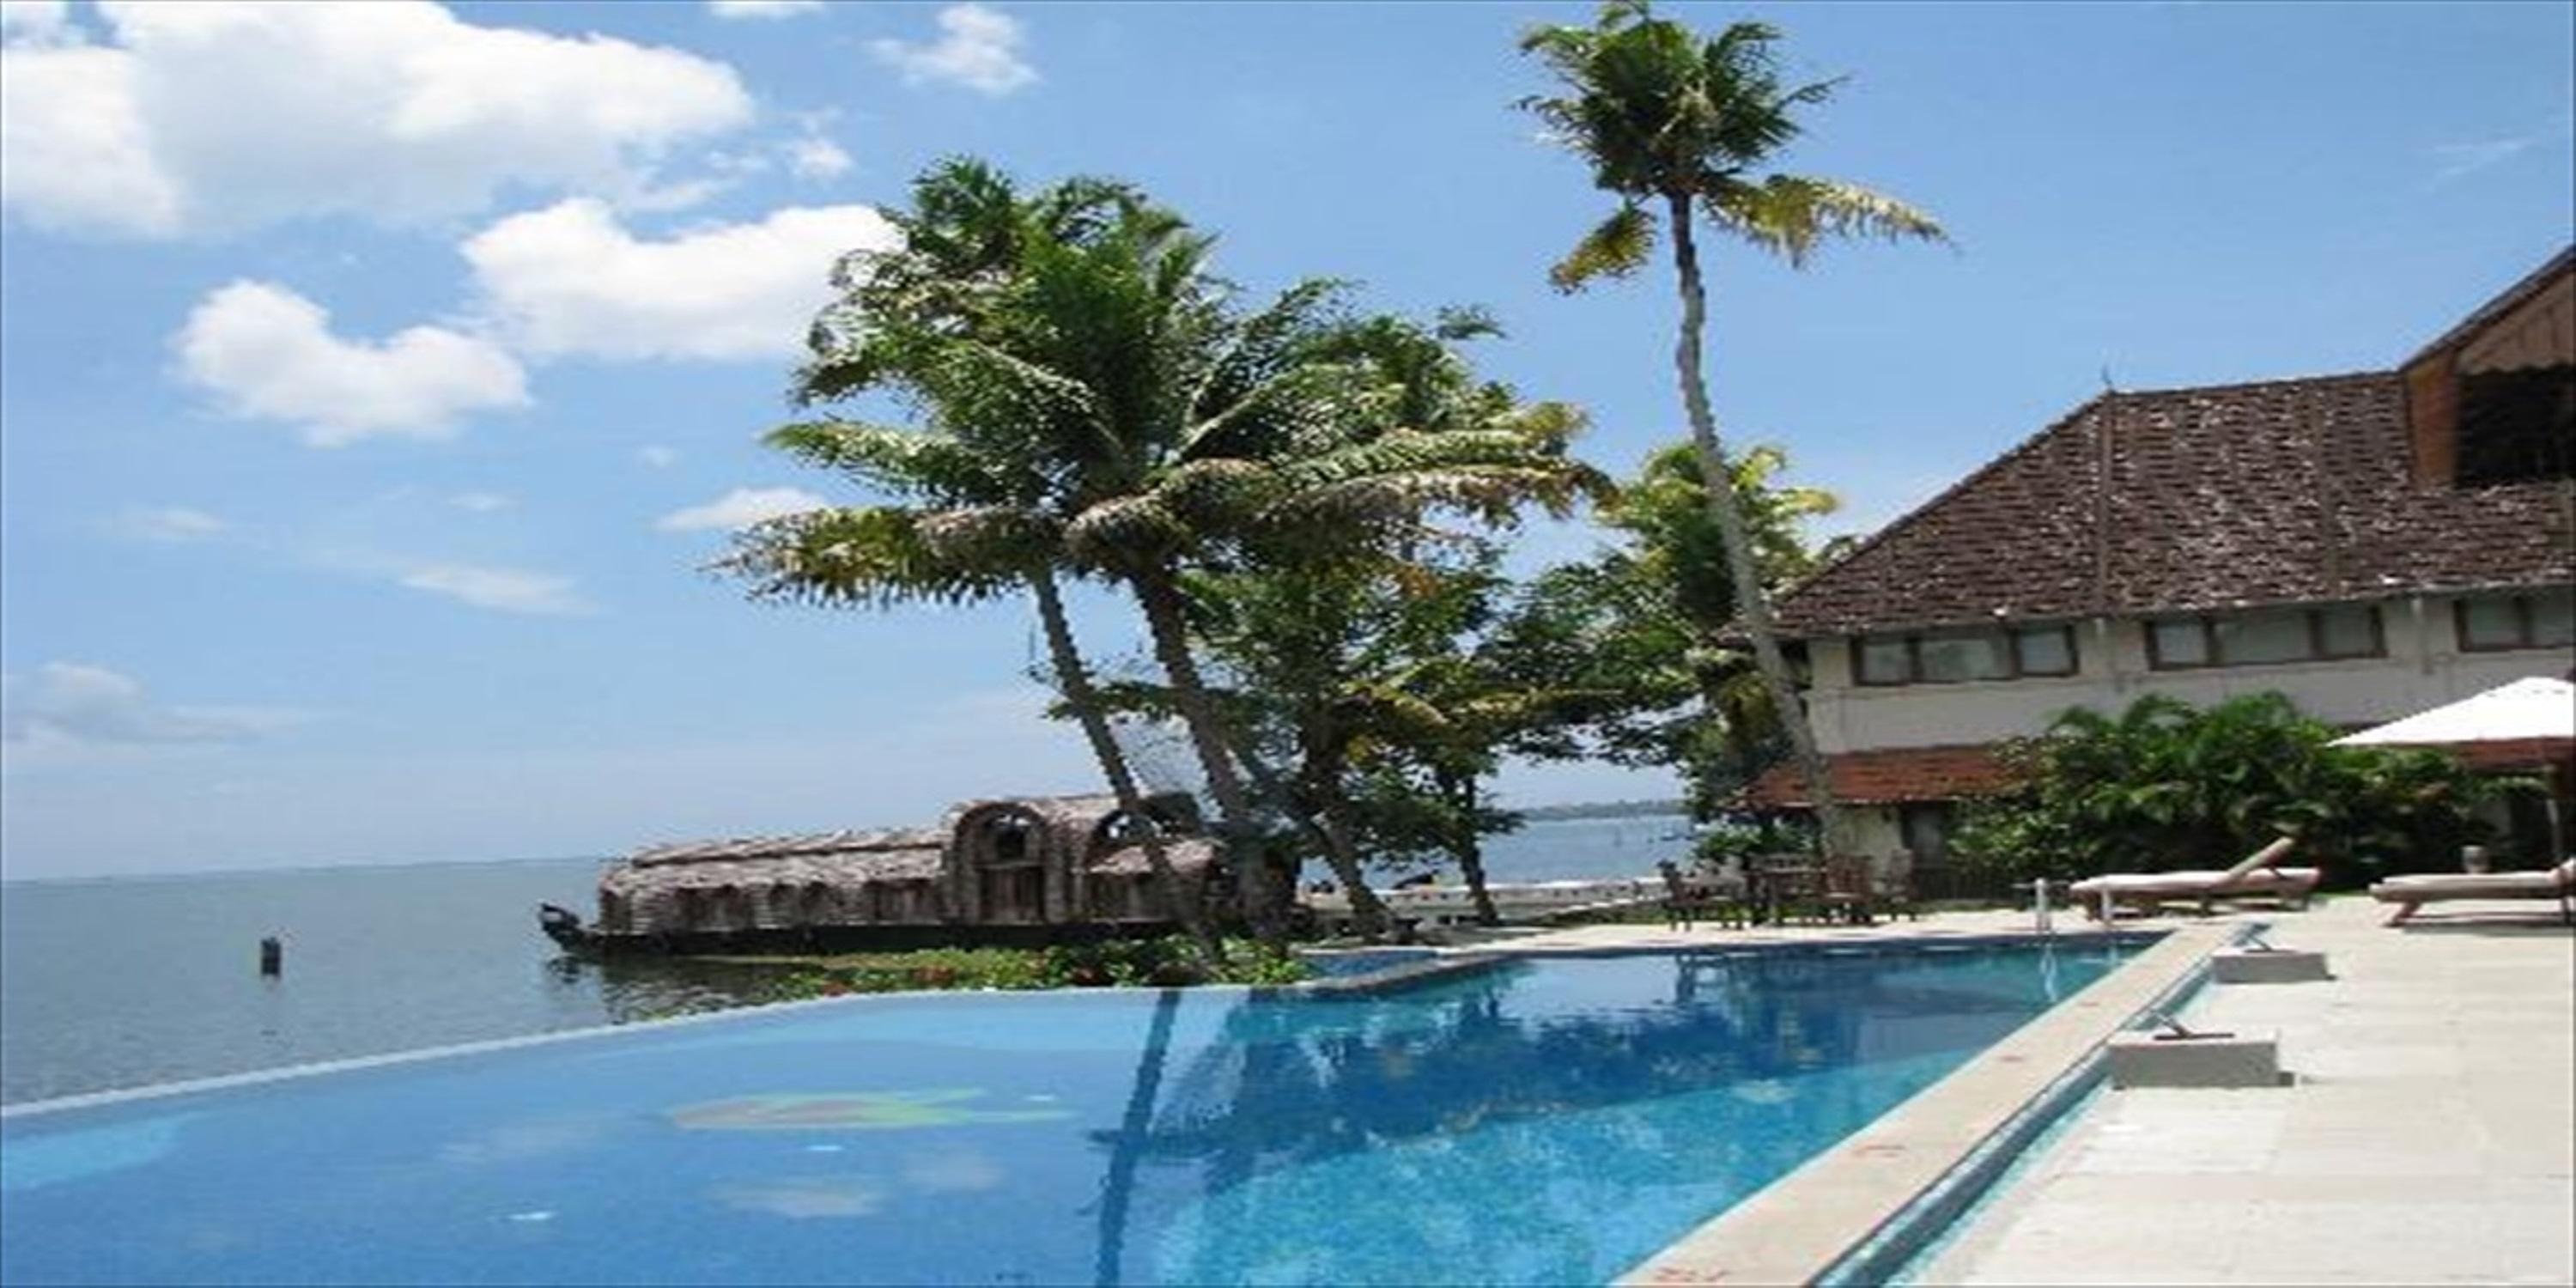 Lemon Tree Vembanad Lake Resort, Kerala image